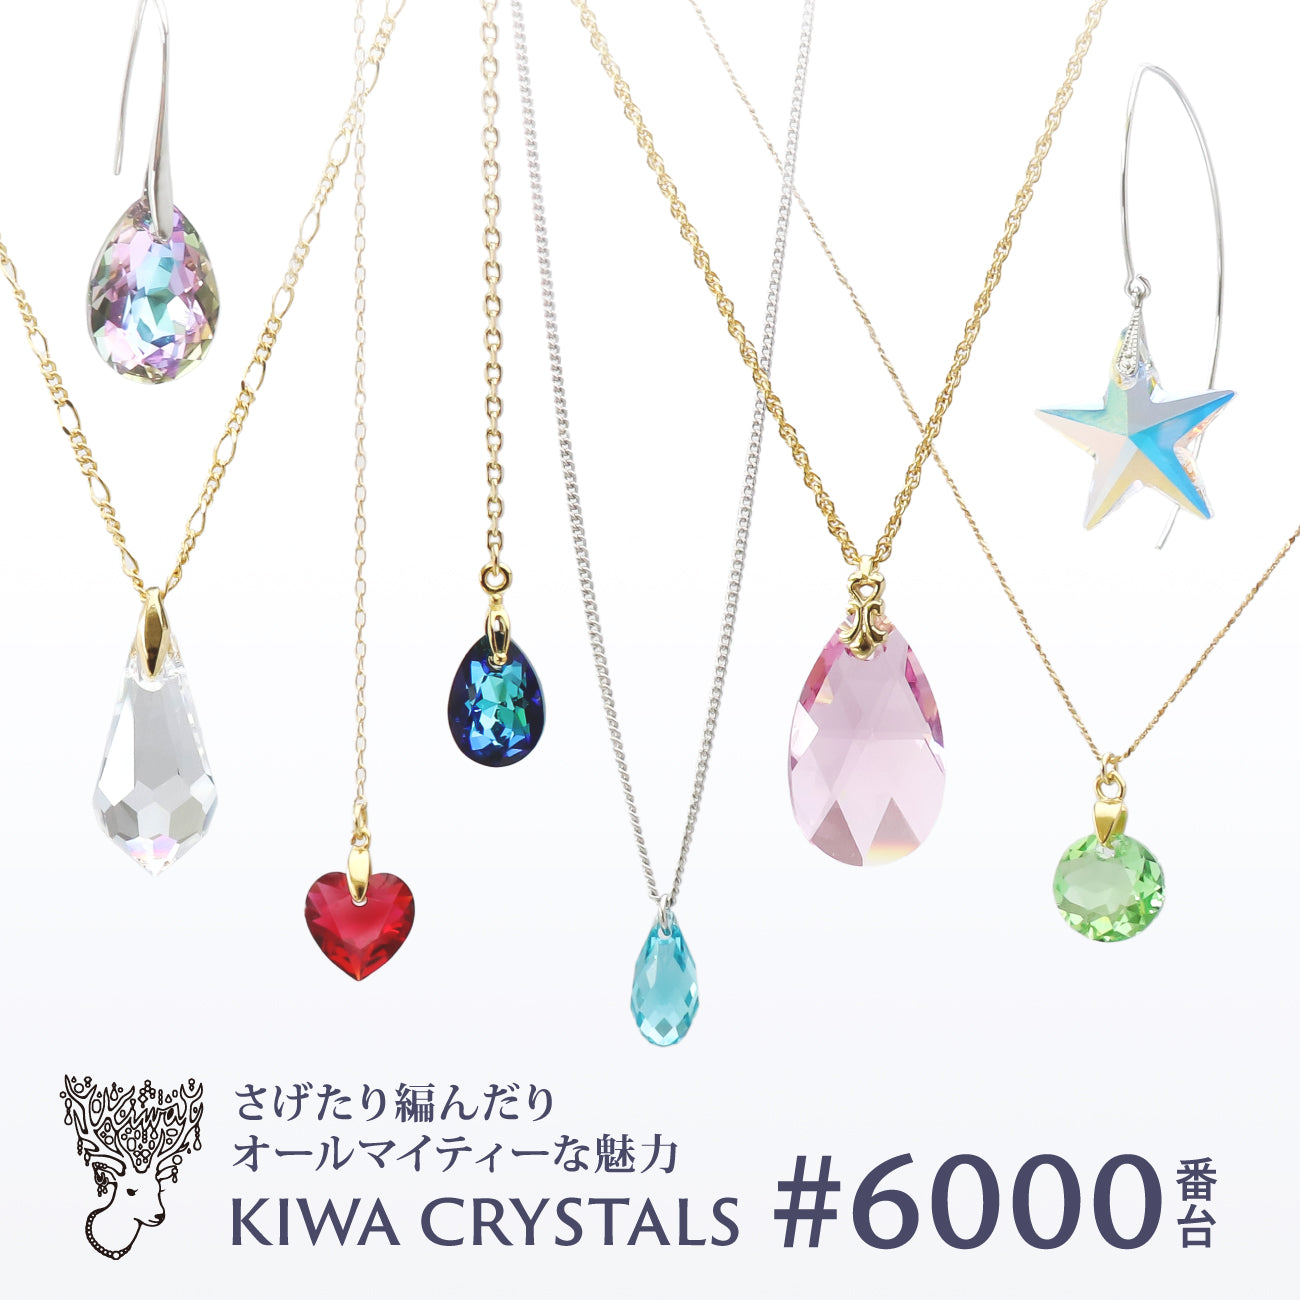 KIWA CRYSTALS #6000